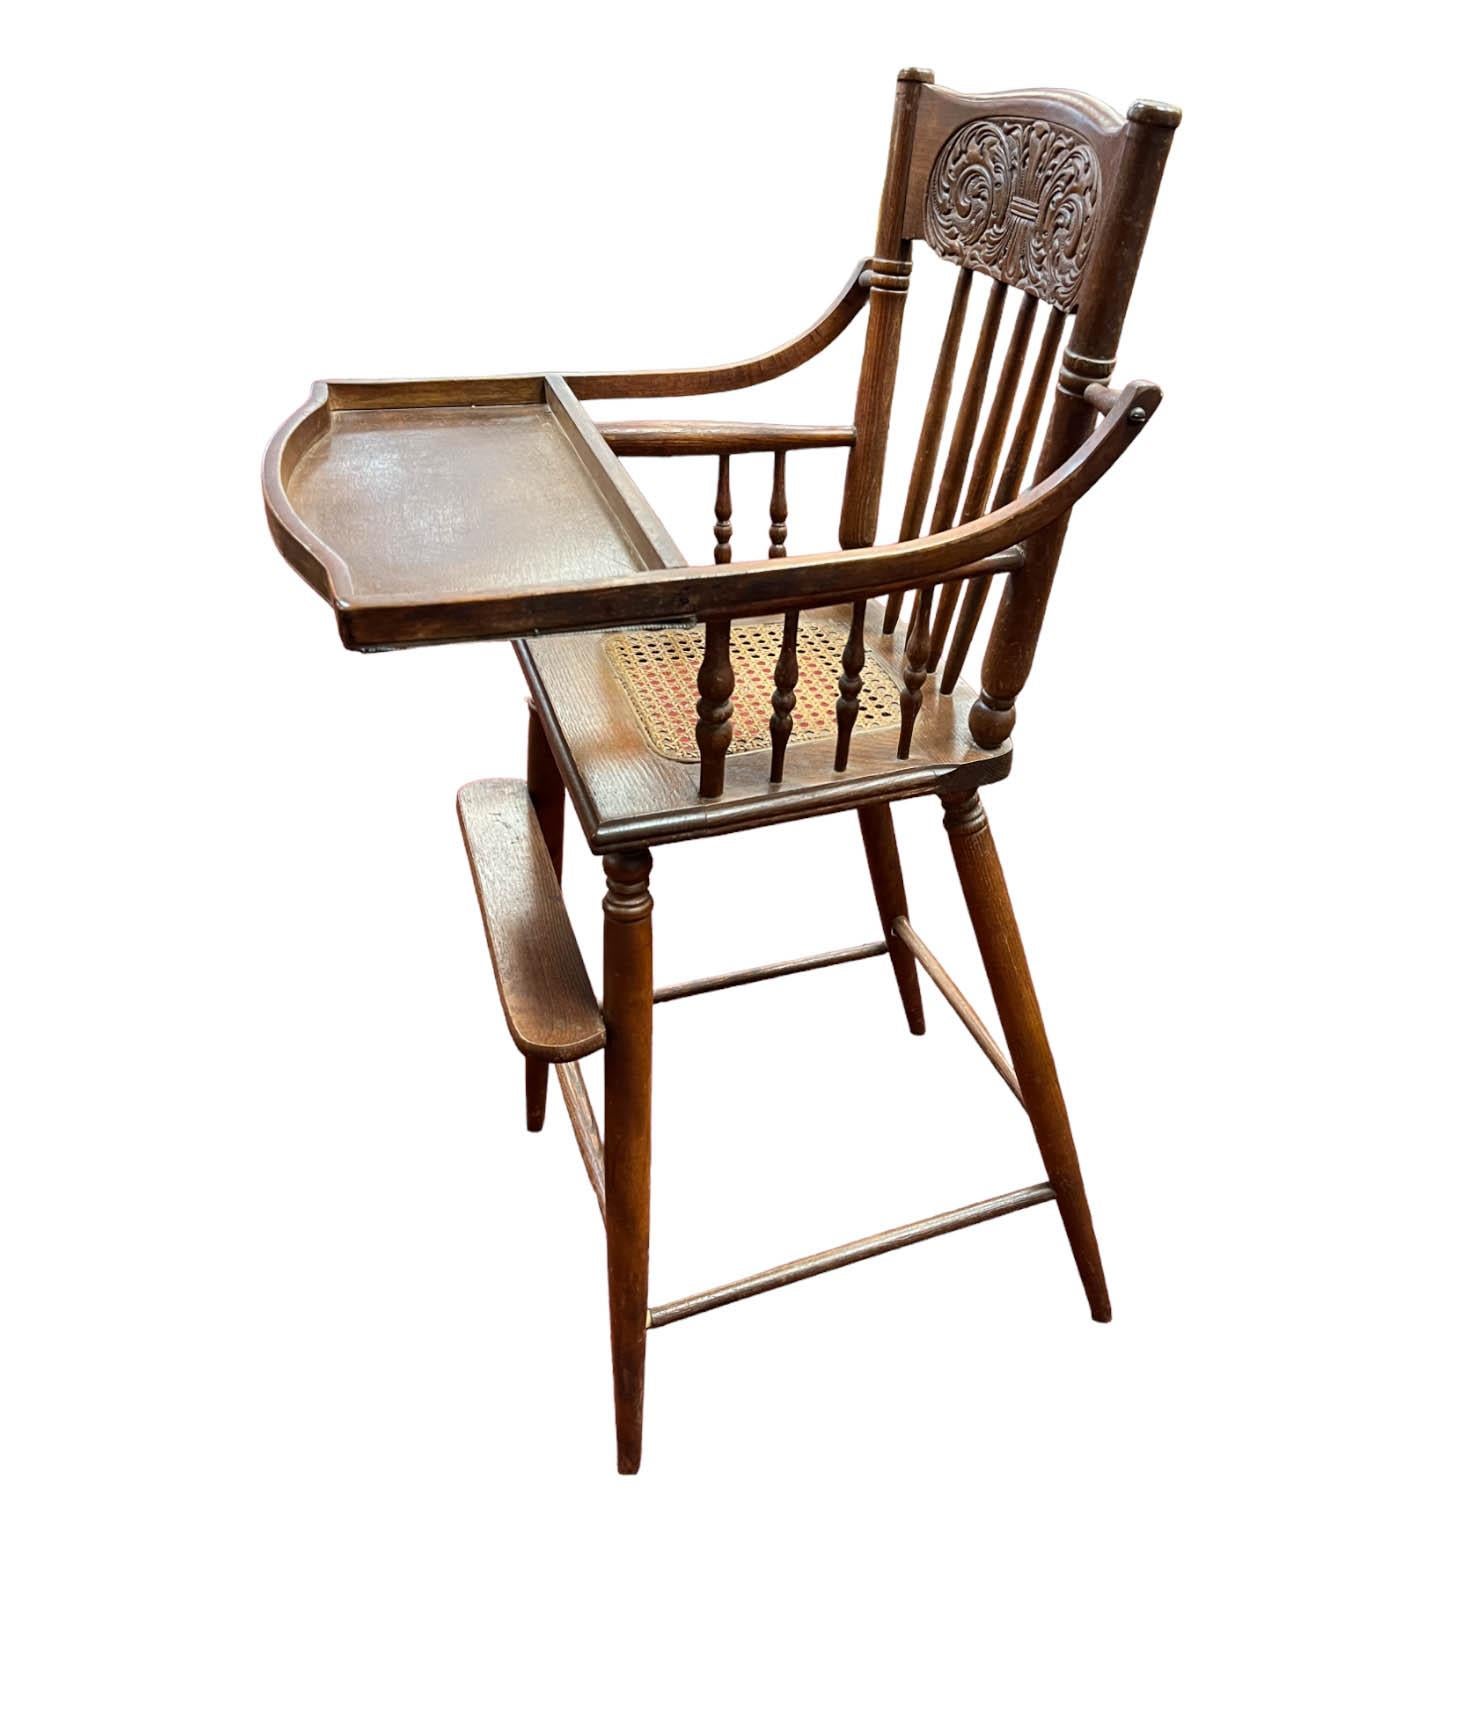 Chaise haute antique pour bébé de l'époque victorienne, une pièce charmante et authentique qui rappelle une époque révolue. Cette chaise haute présente de nombreux détails exquis, tels que l'assise en rotin, le dossier sculpté de manière complexe et